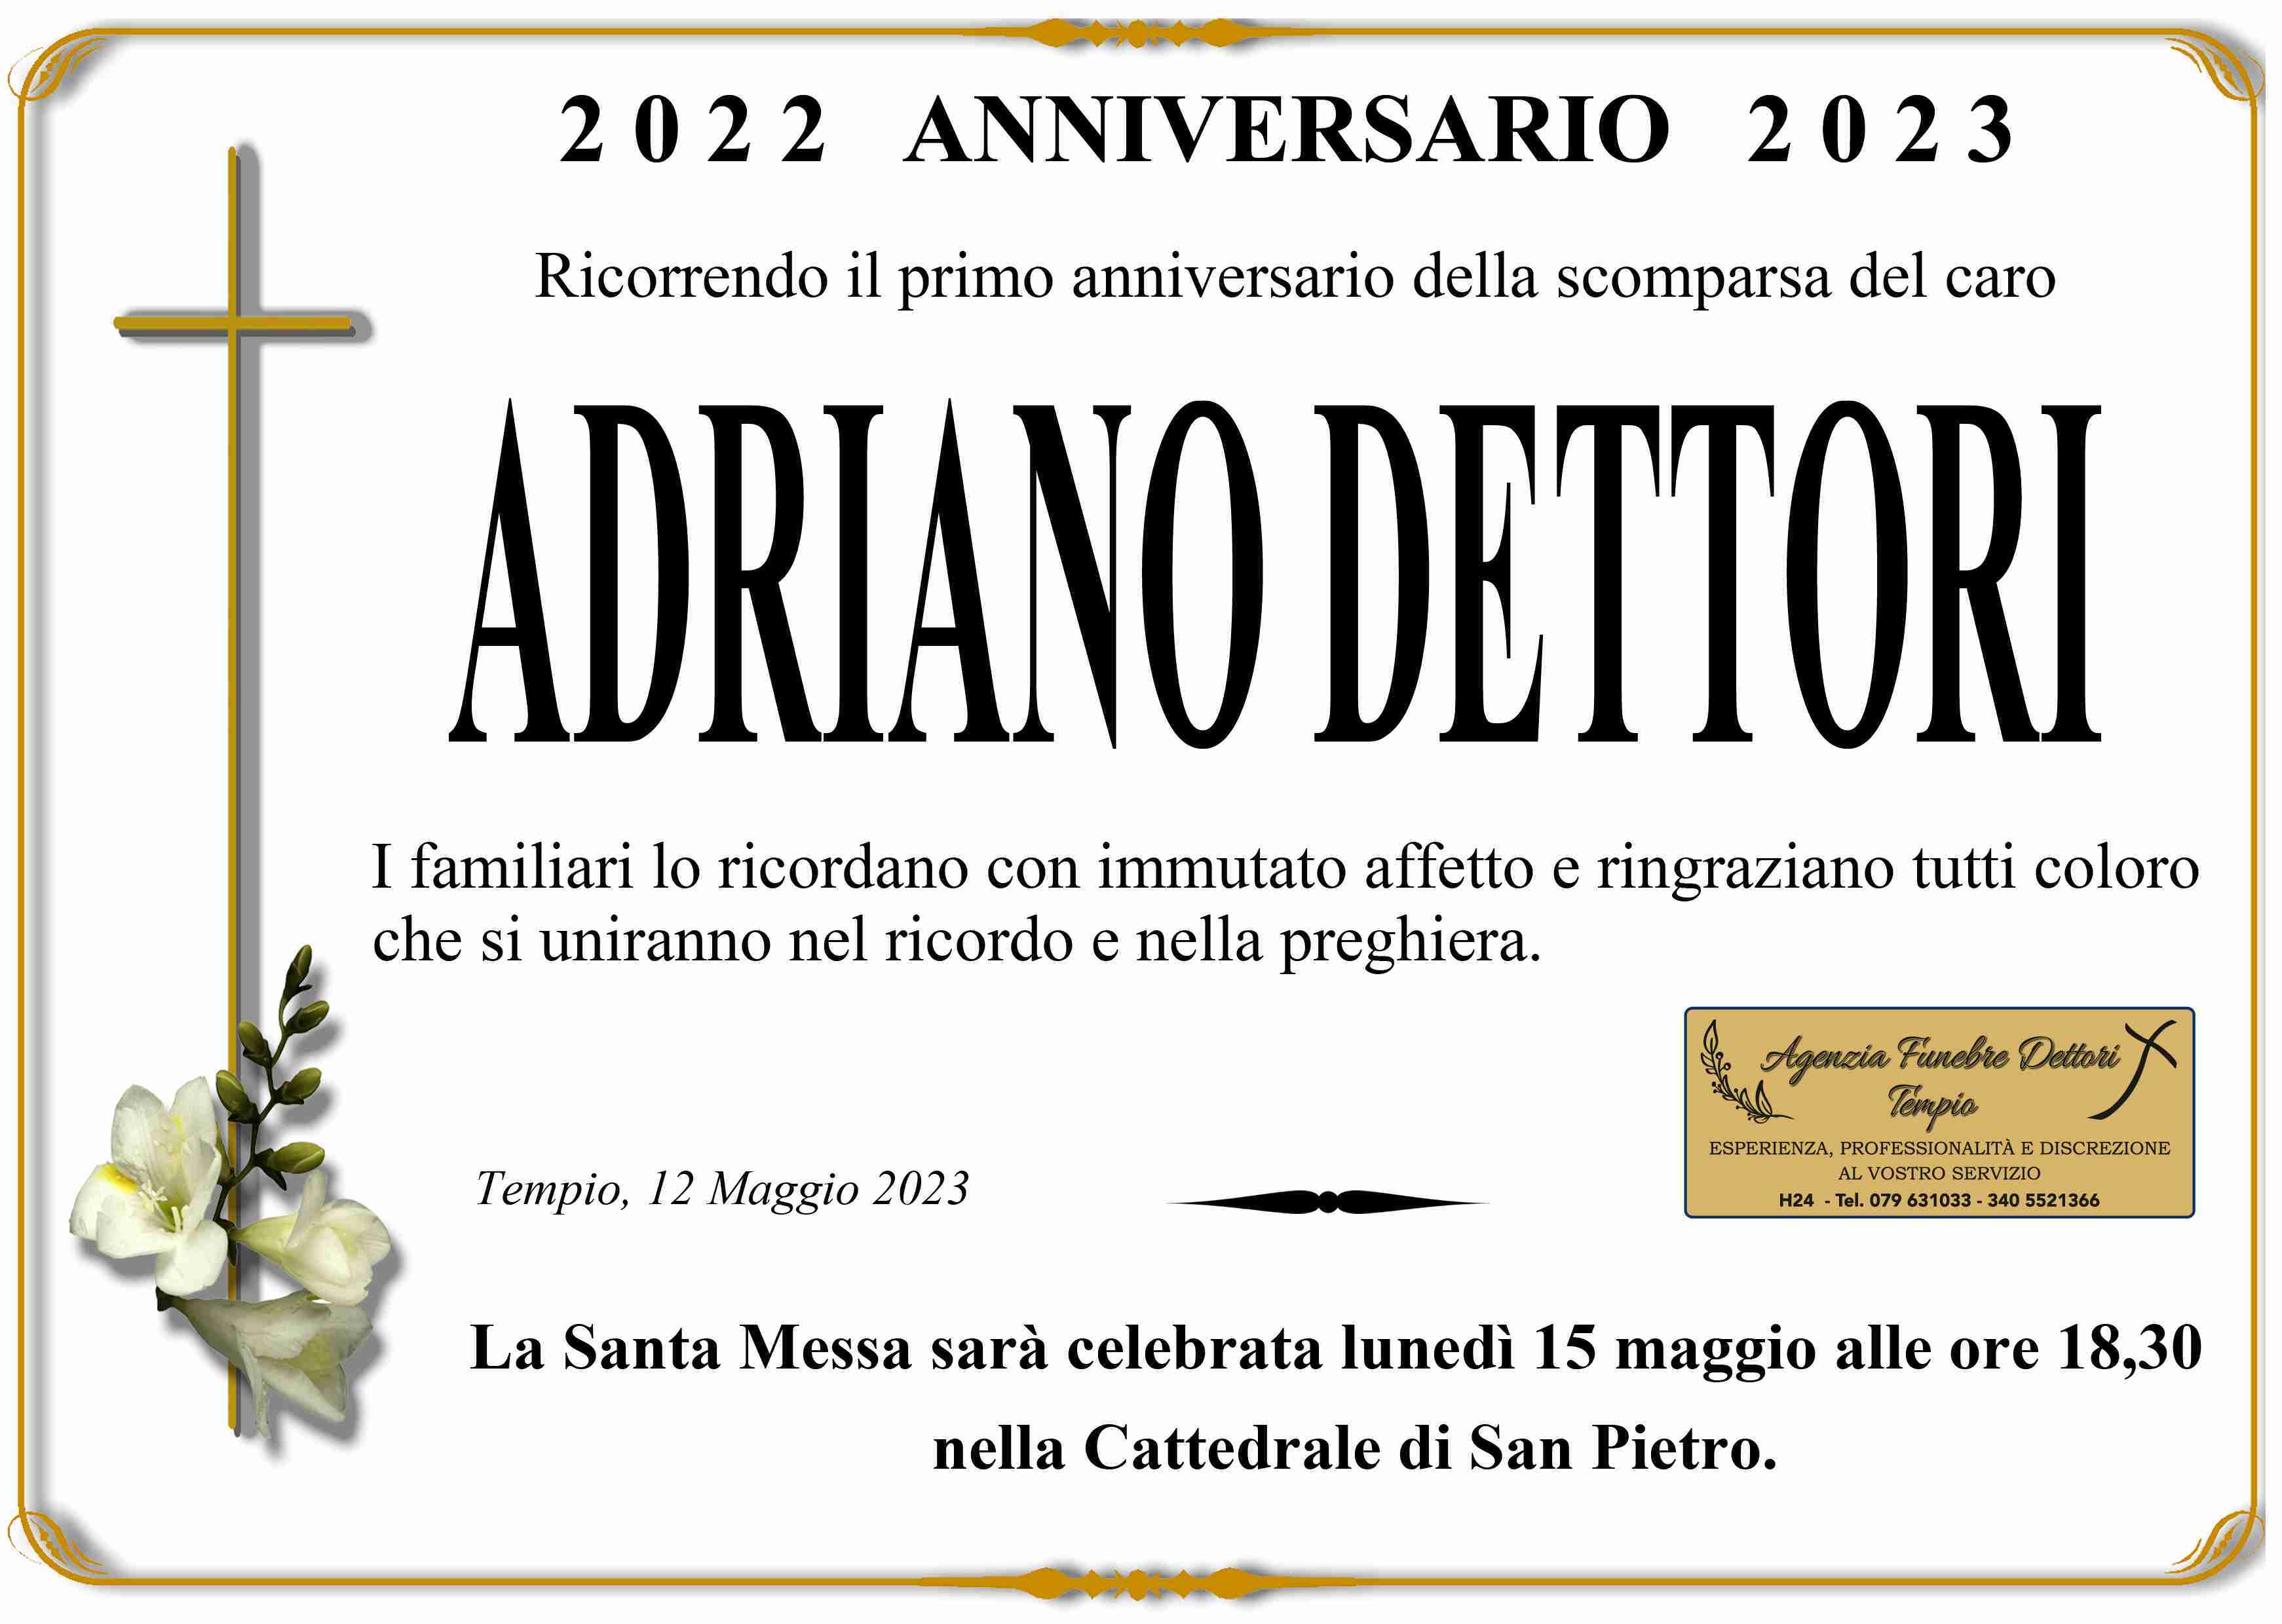 Adriano Dettori